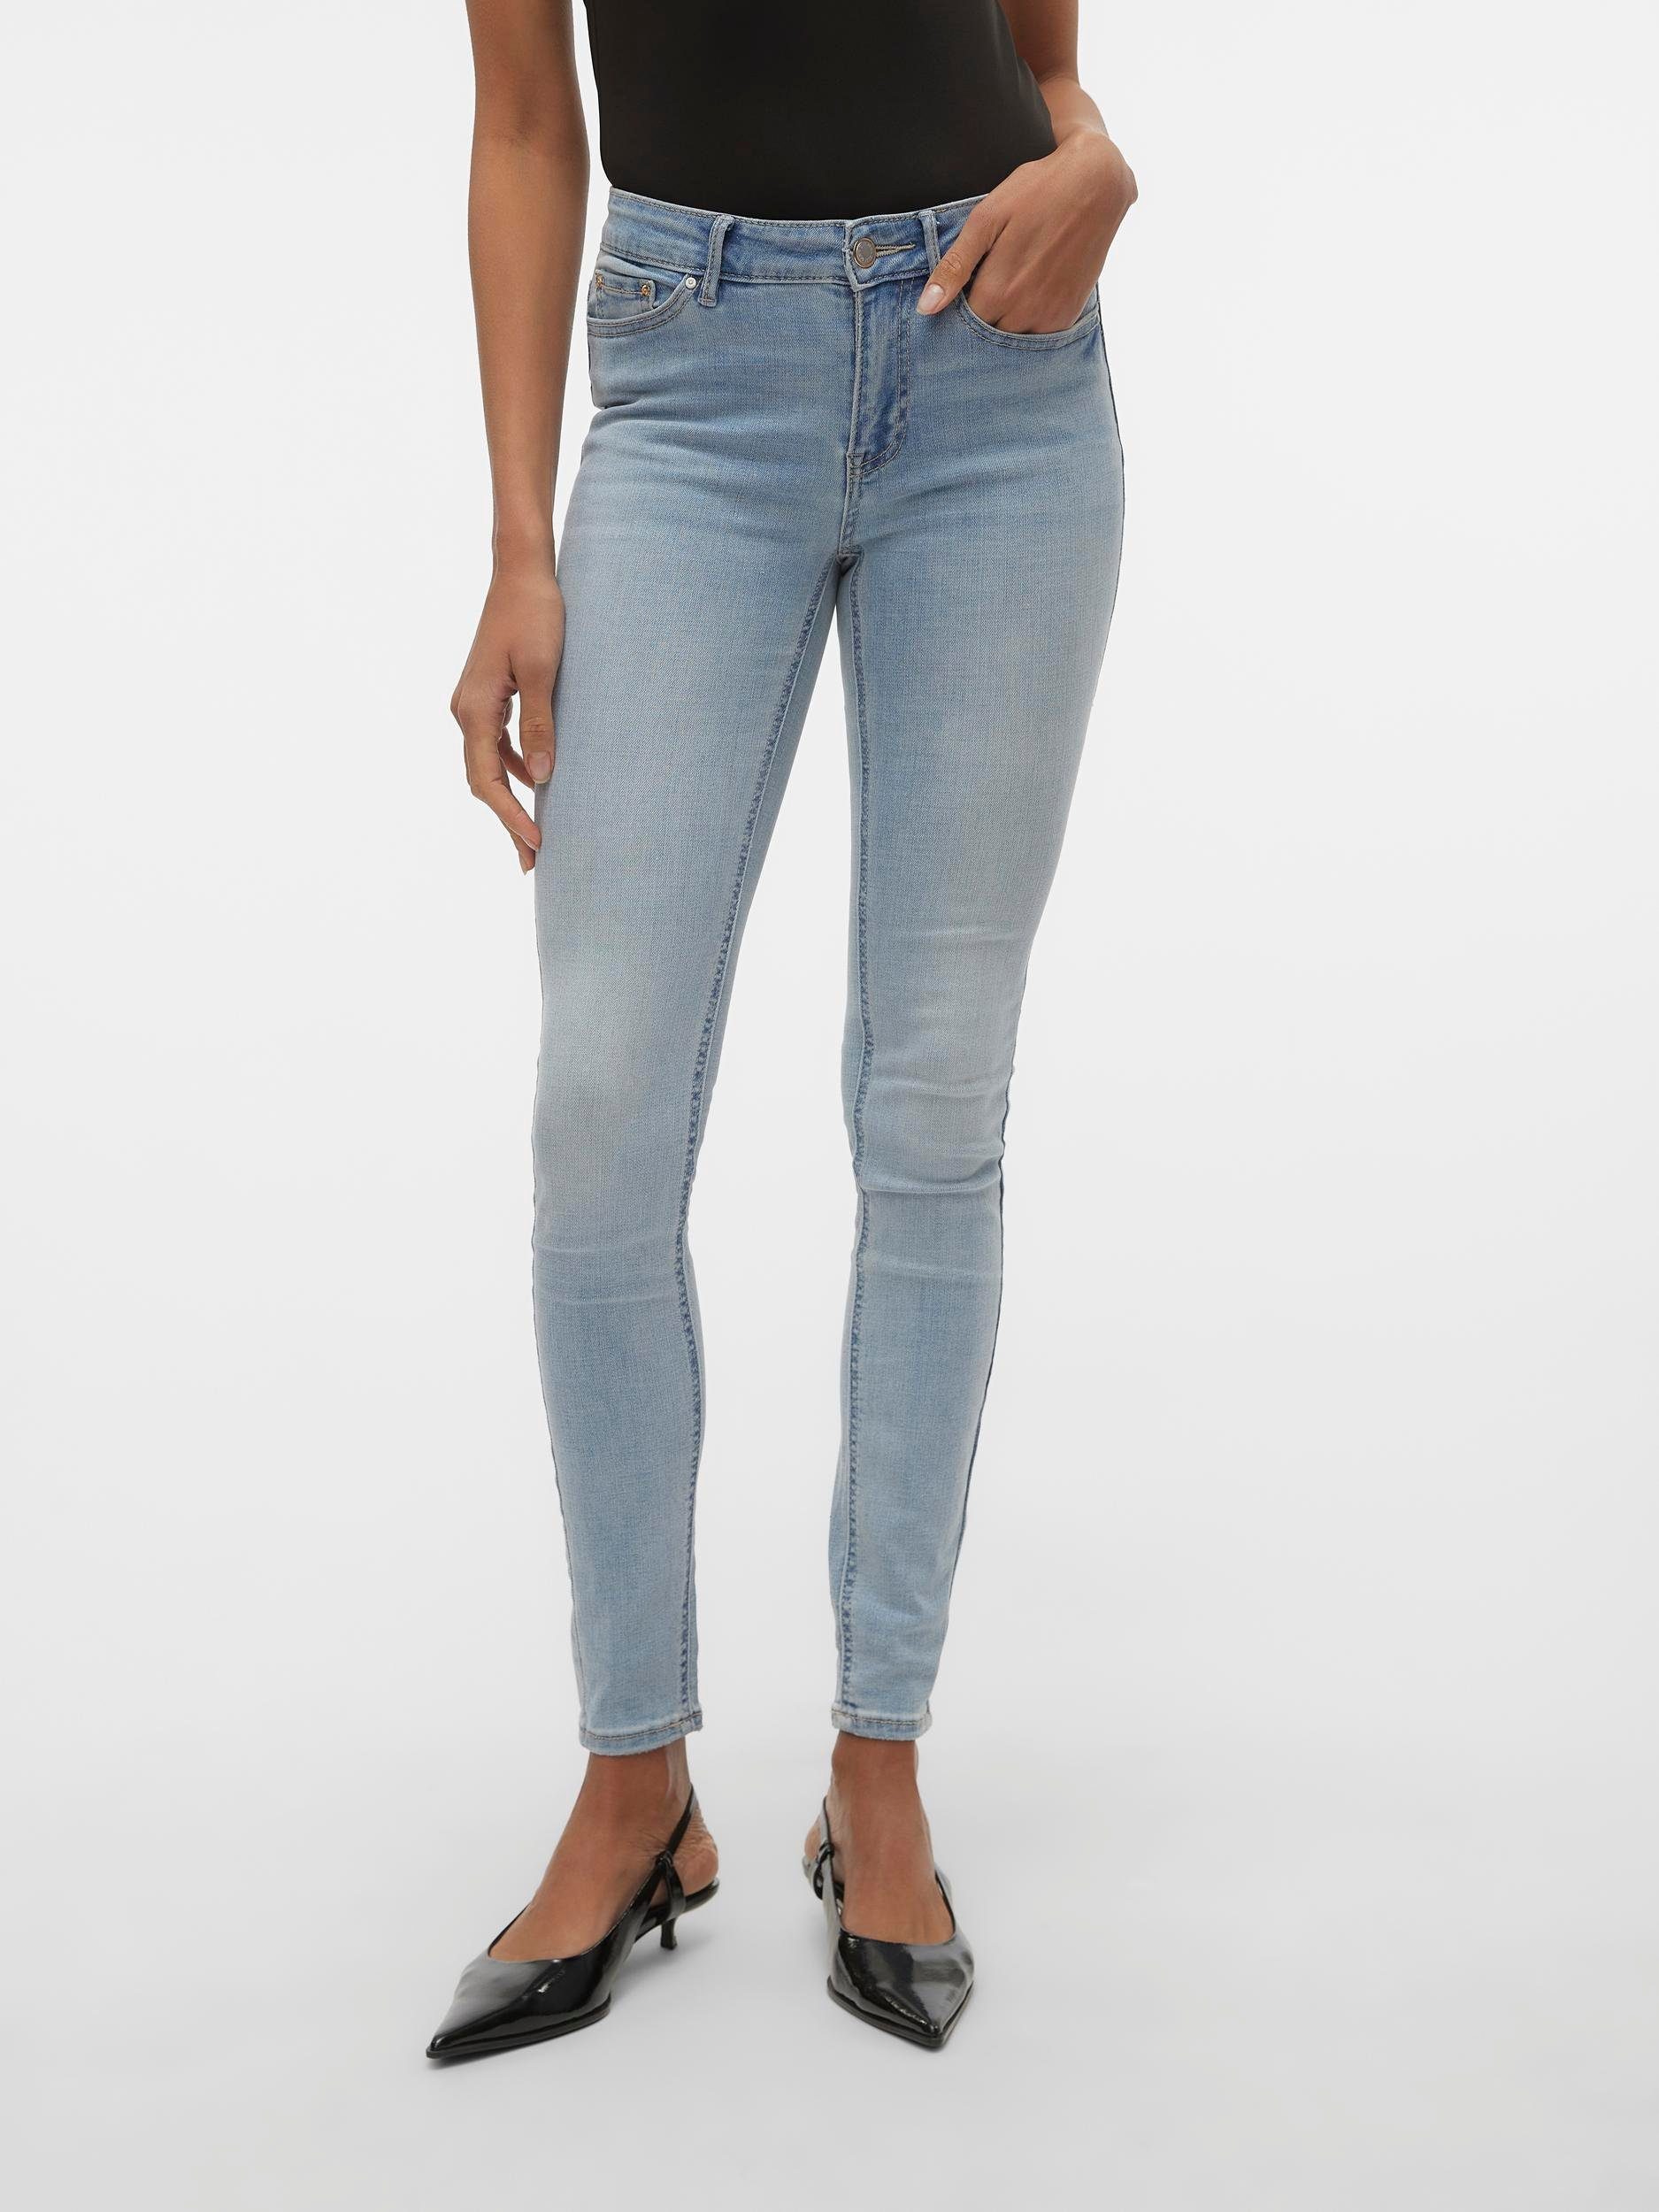 Vero Moda Skinny-fit-Jeans VMFLASH MR SKINNY JEANS LI3102 GA NOOS